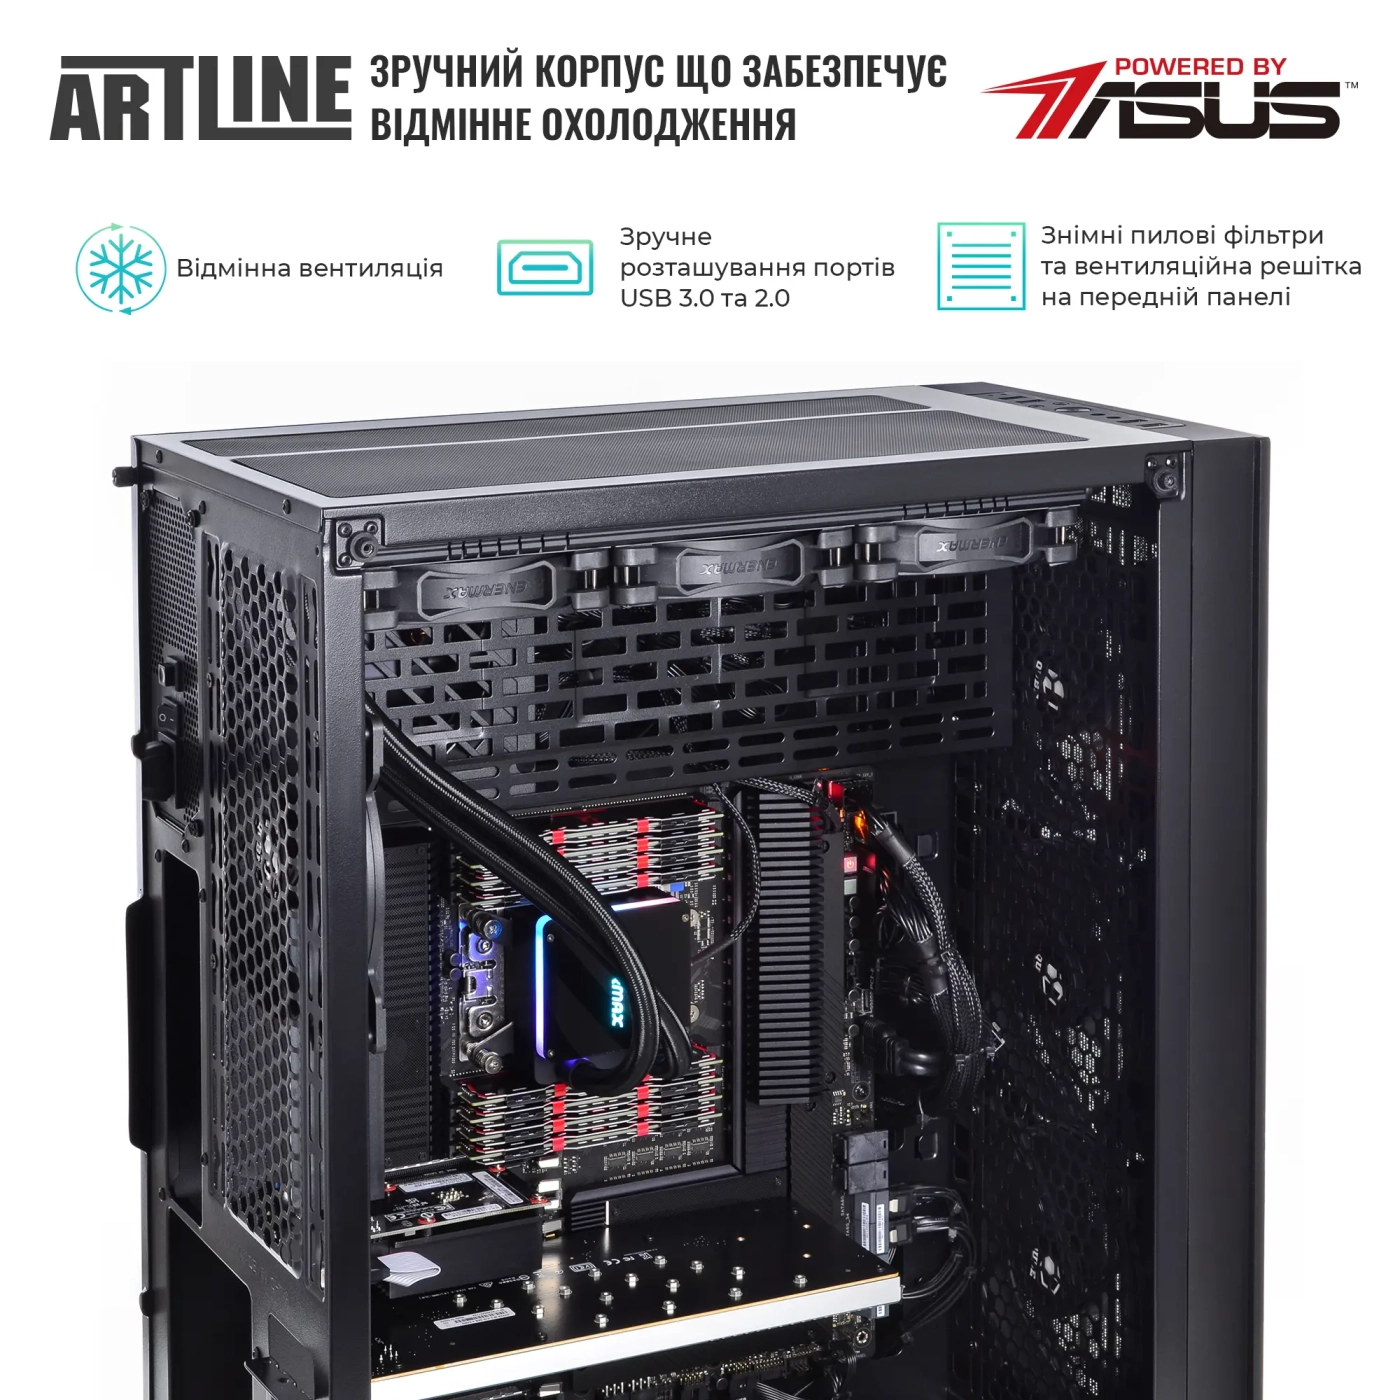 Купить Сервер ARTLINE Business T85v06 - фото 2